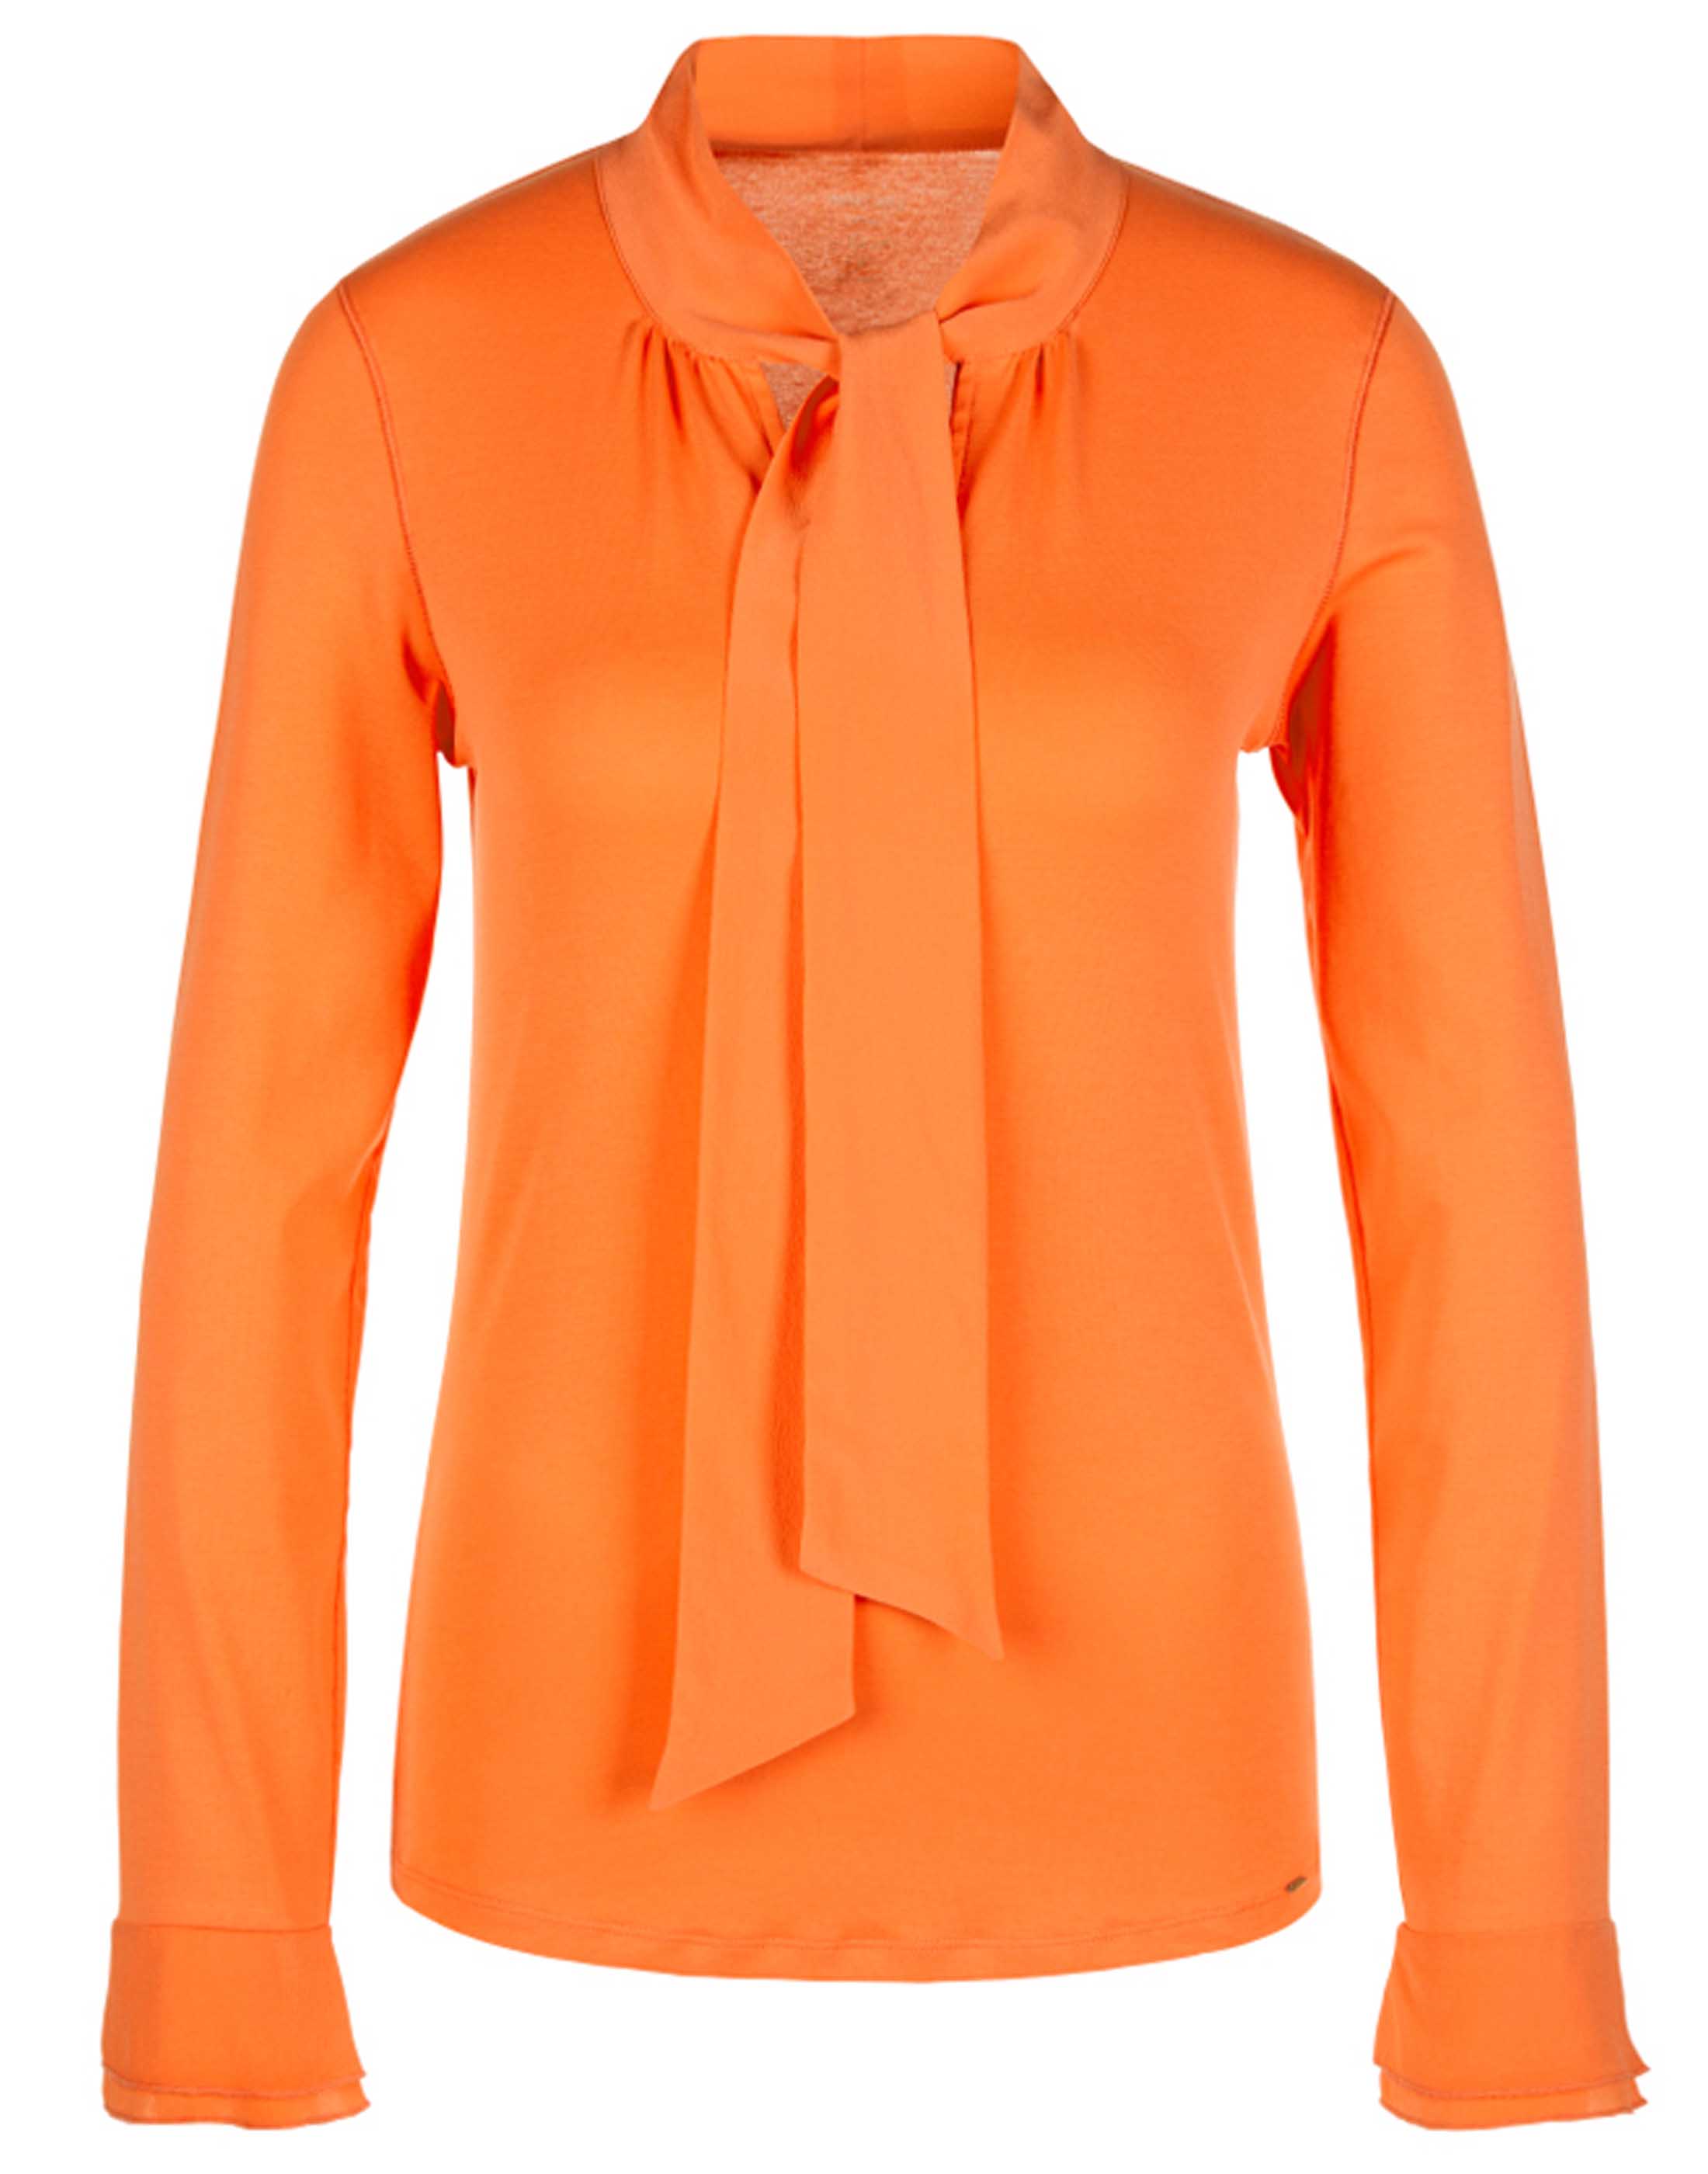 Marc Cain blouses KC4808 J14 Orange by Penninkhoffashion.com